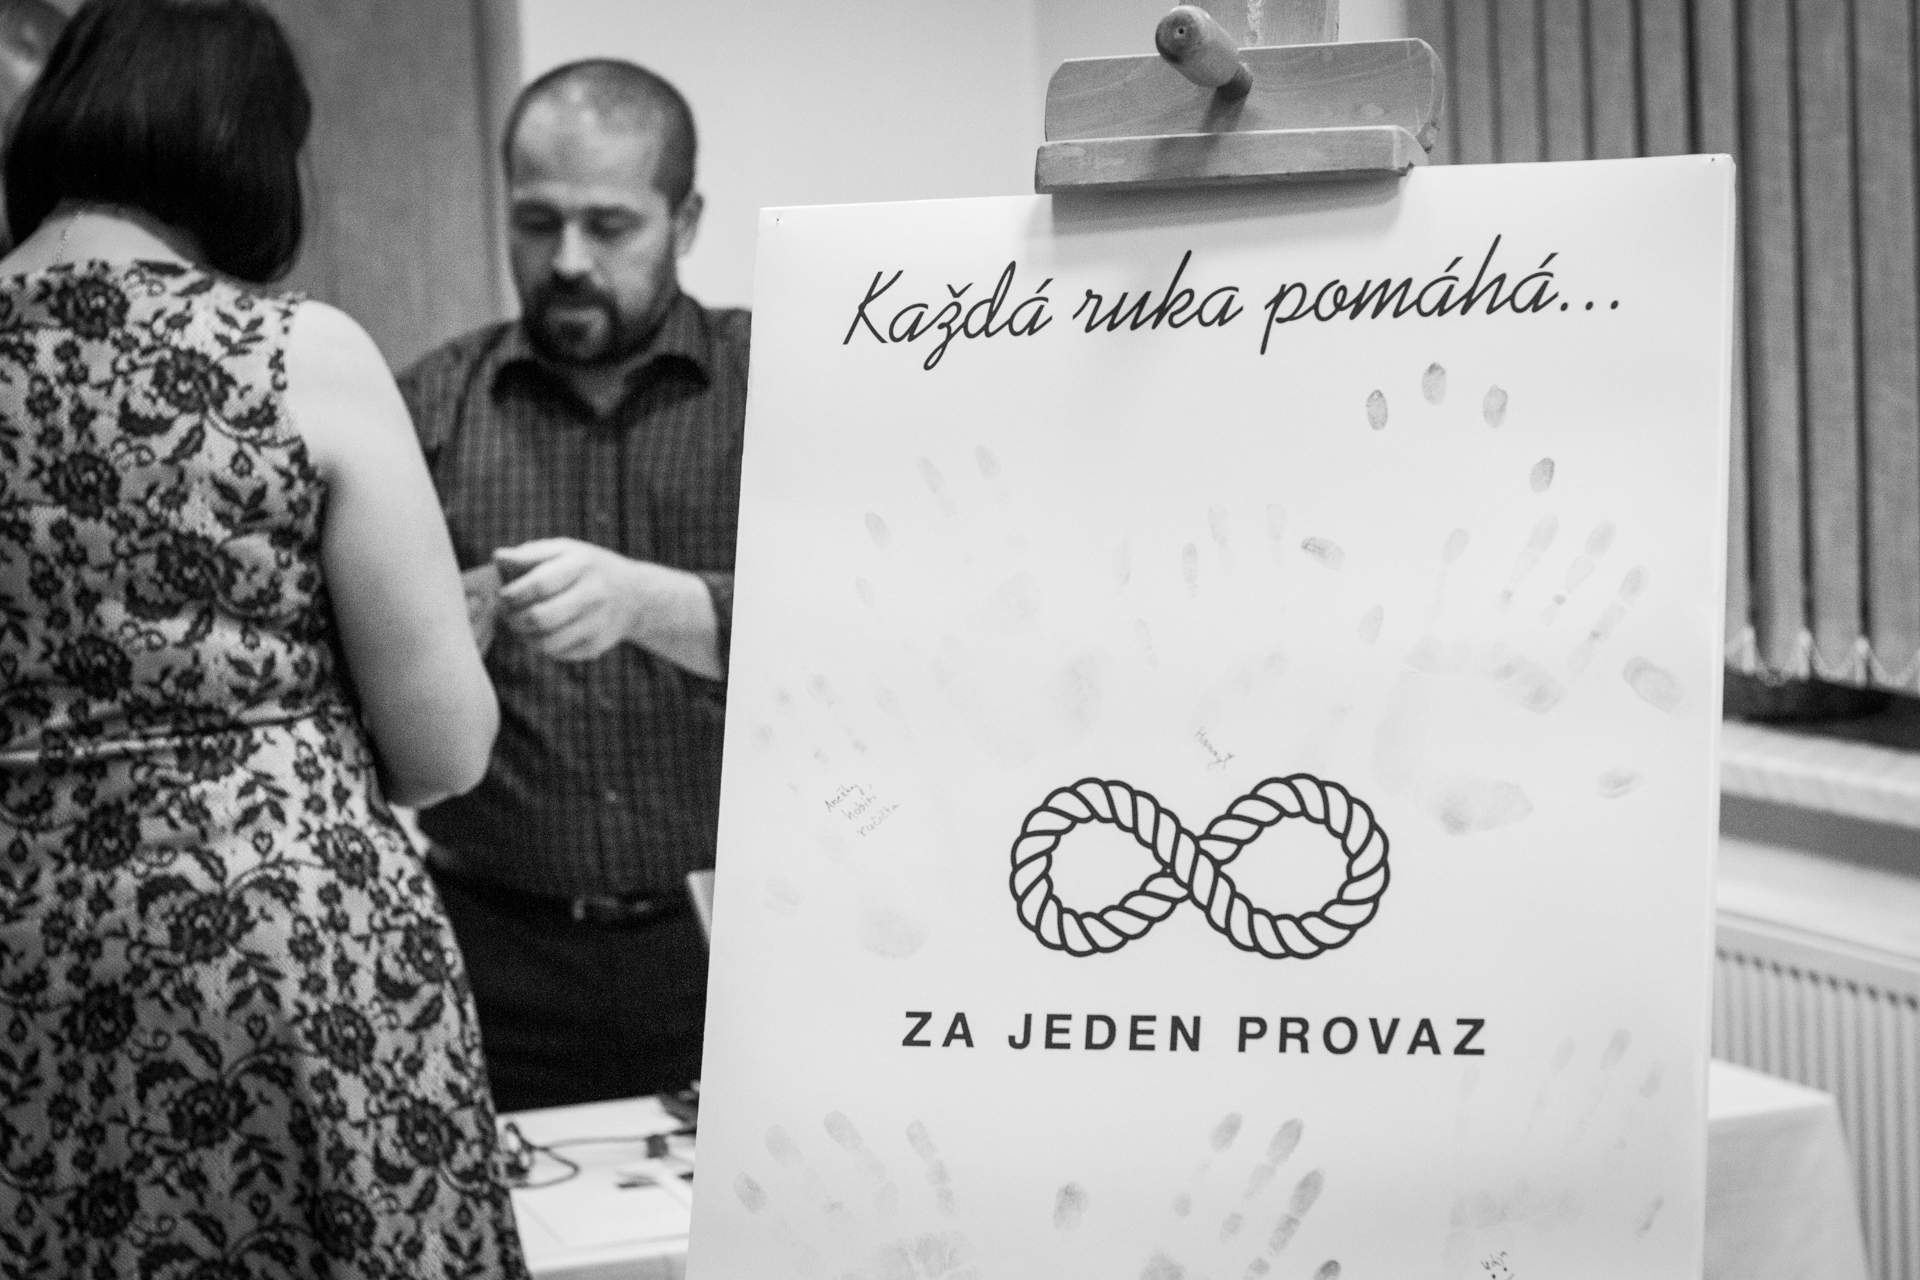 Jedenáct let pomoci českotřebovské komunitě